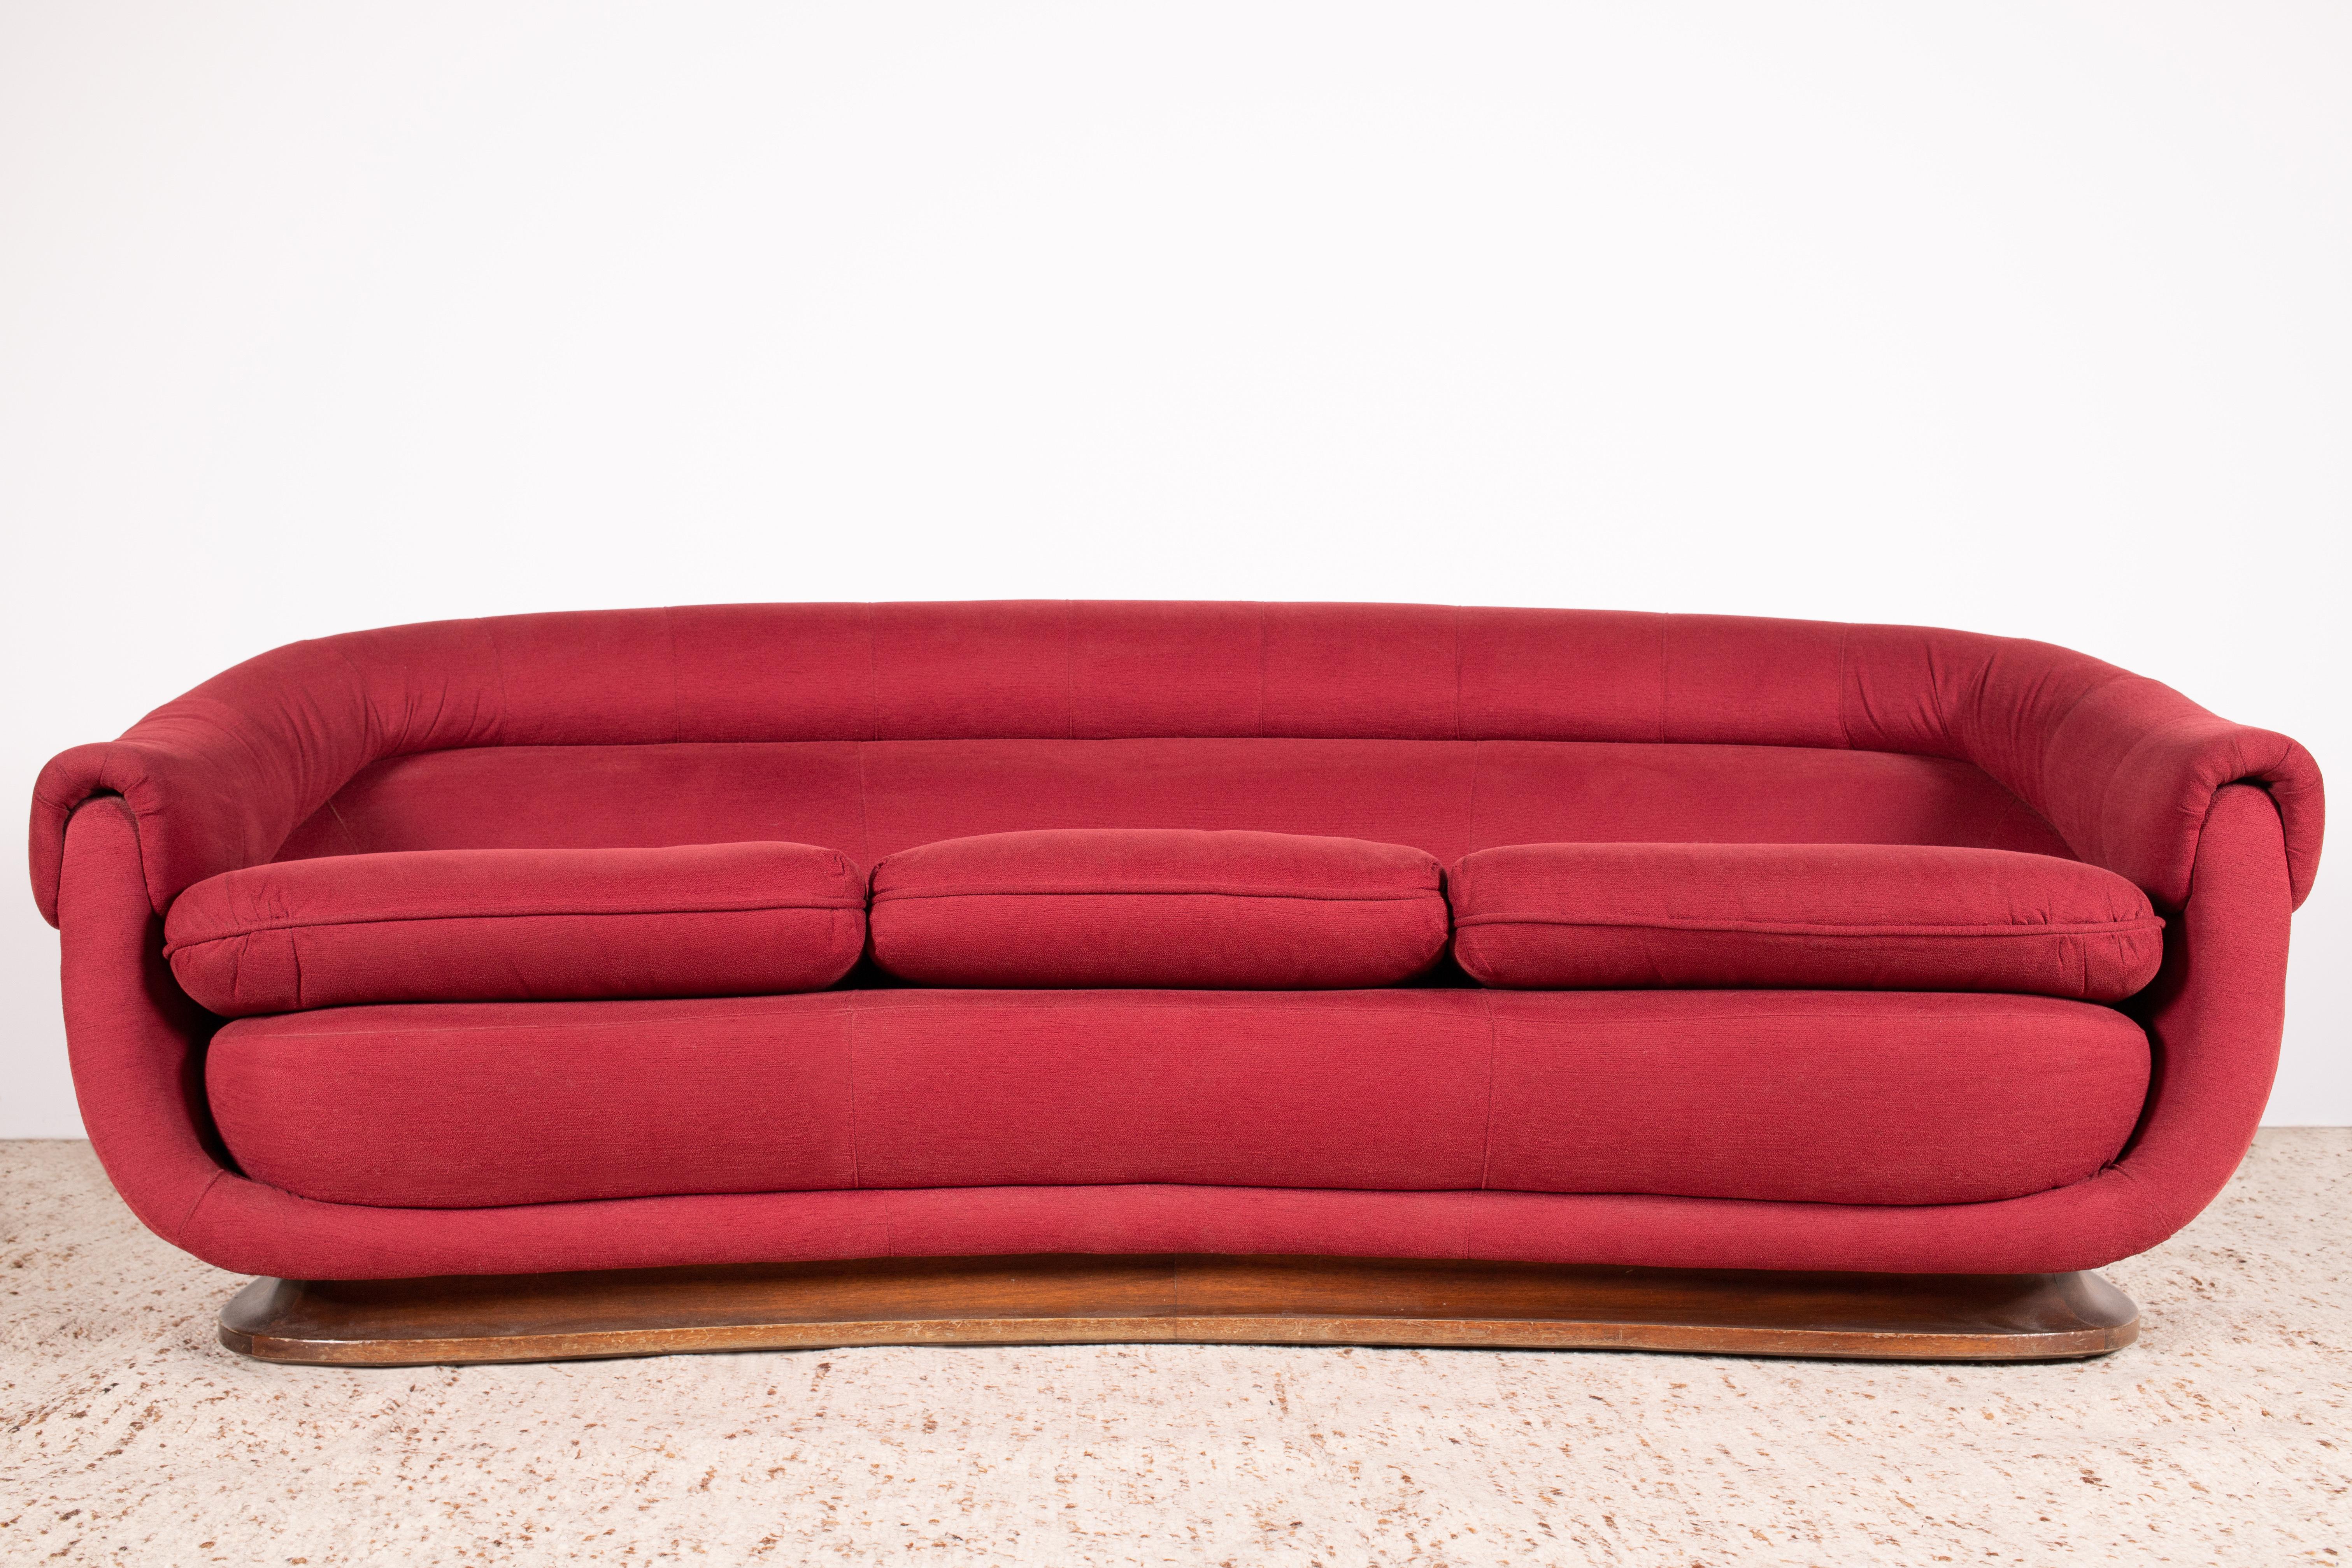 1950er - 1960er Jahre Mid-Century Modernes italienisches geschwungenes / halbmondförmiges 3-Sitzer-Sofa mit dunklem Holzsockel (wahrscheinlich Nussbaum) und roter gewebter Polsterung.

Elegante, geschwungene Linien, die vom zentralen Kurvenmotiv